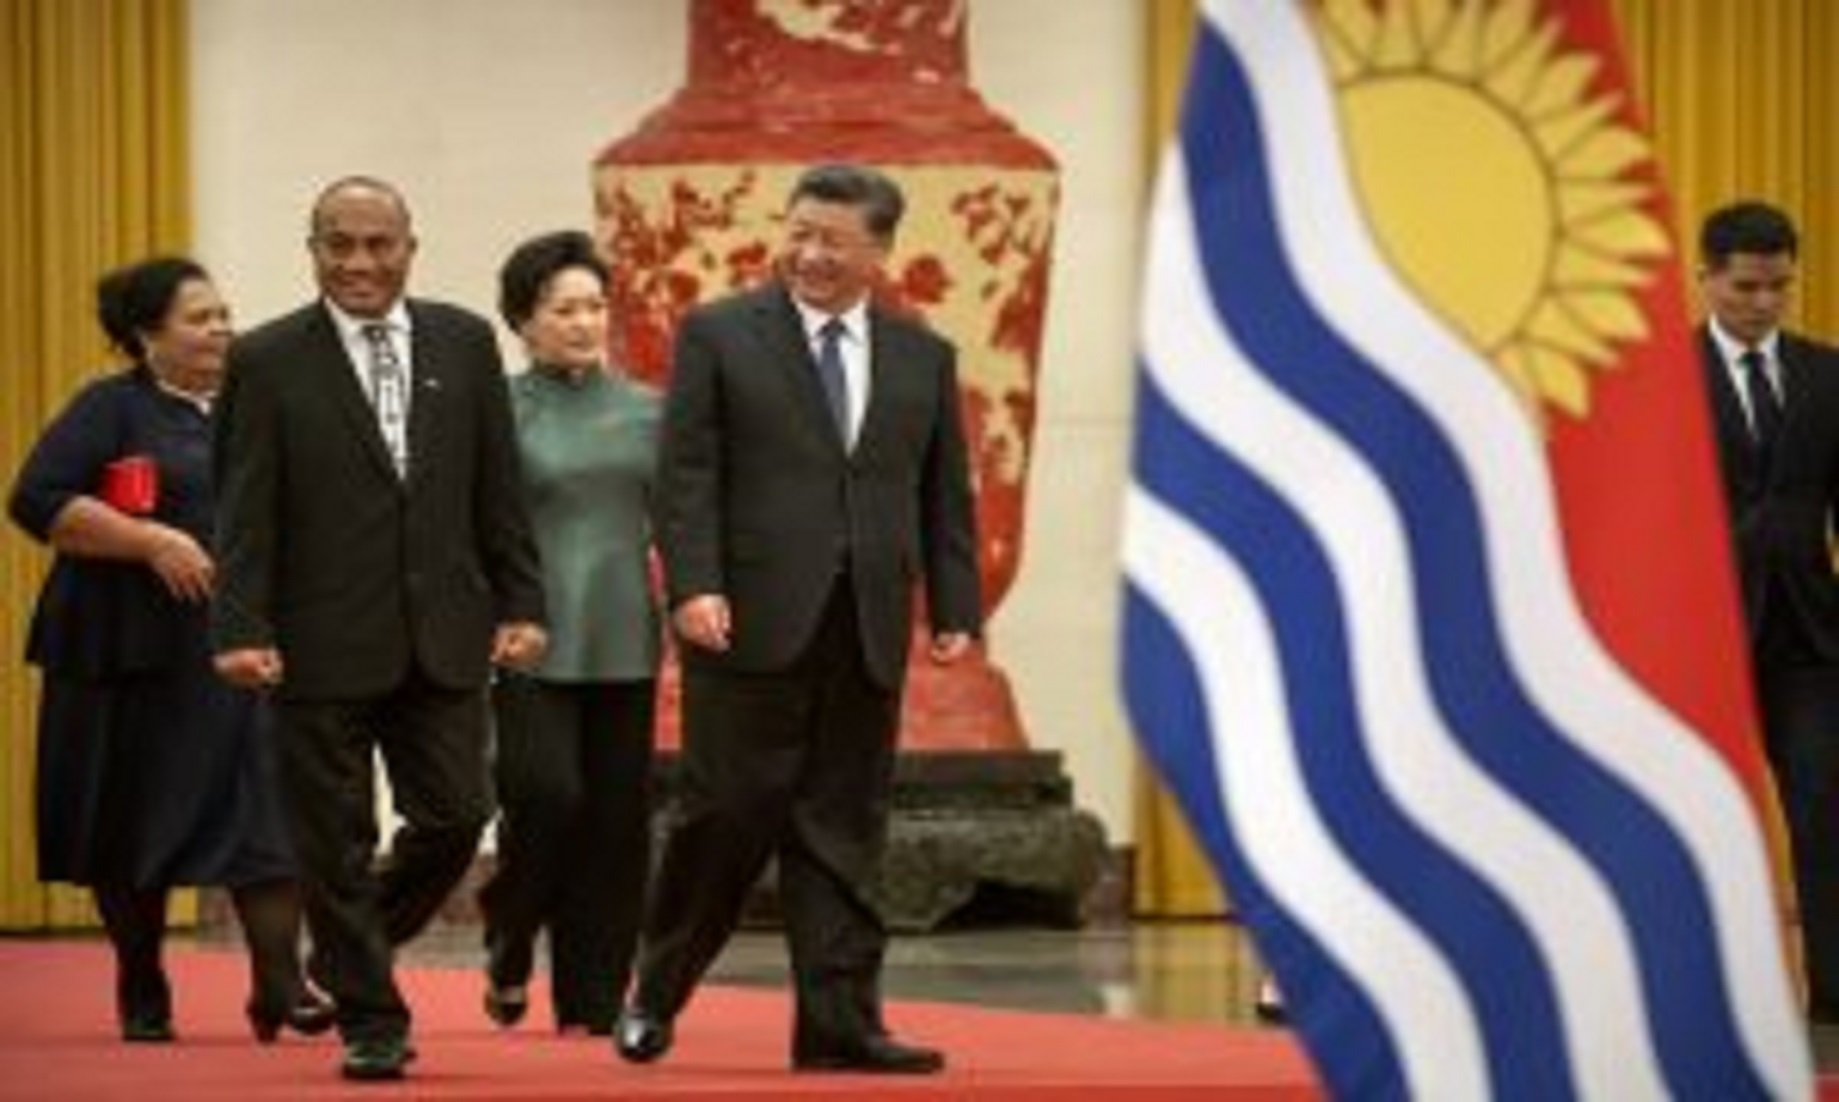 China, Kiribati Eye Further Development Of Ties